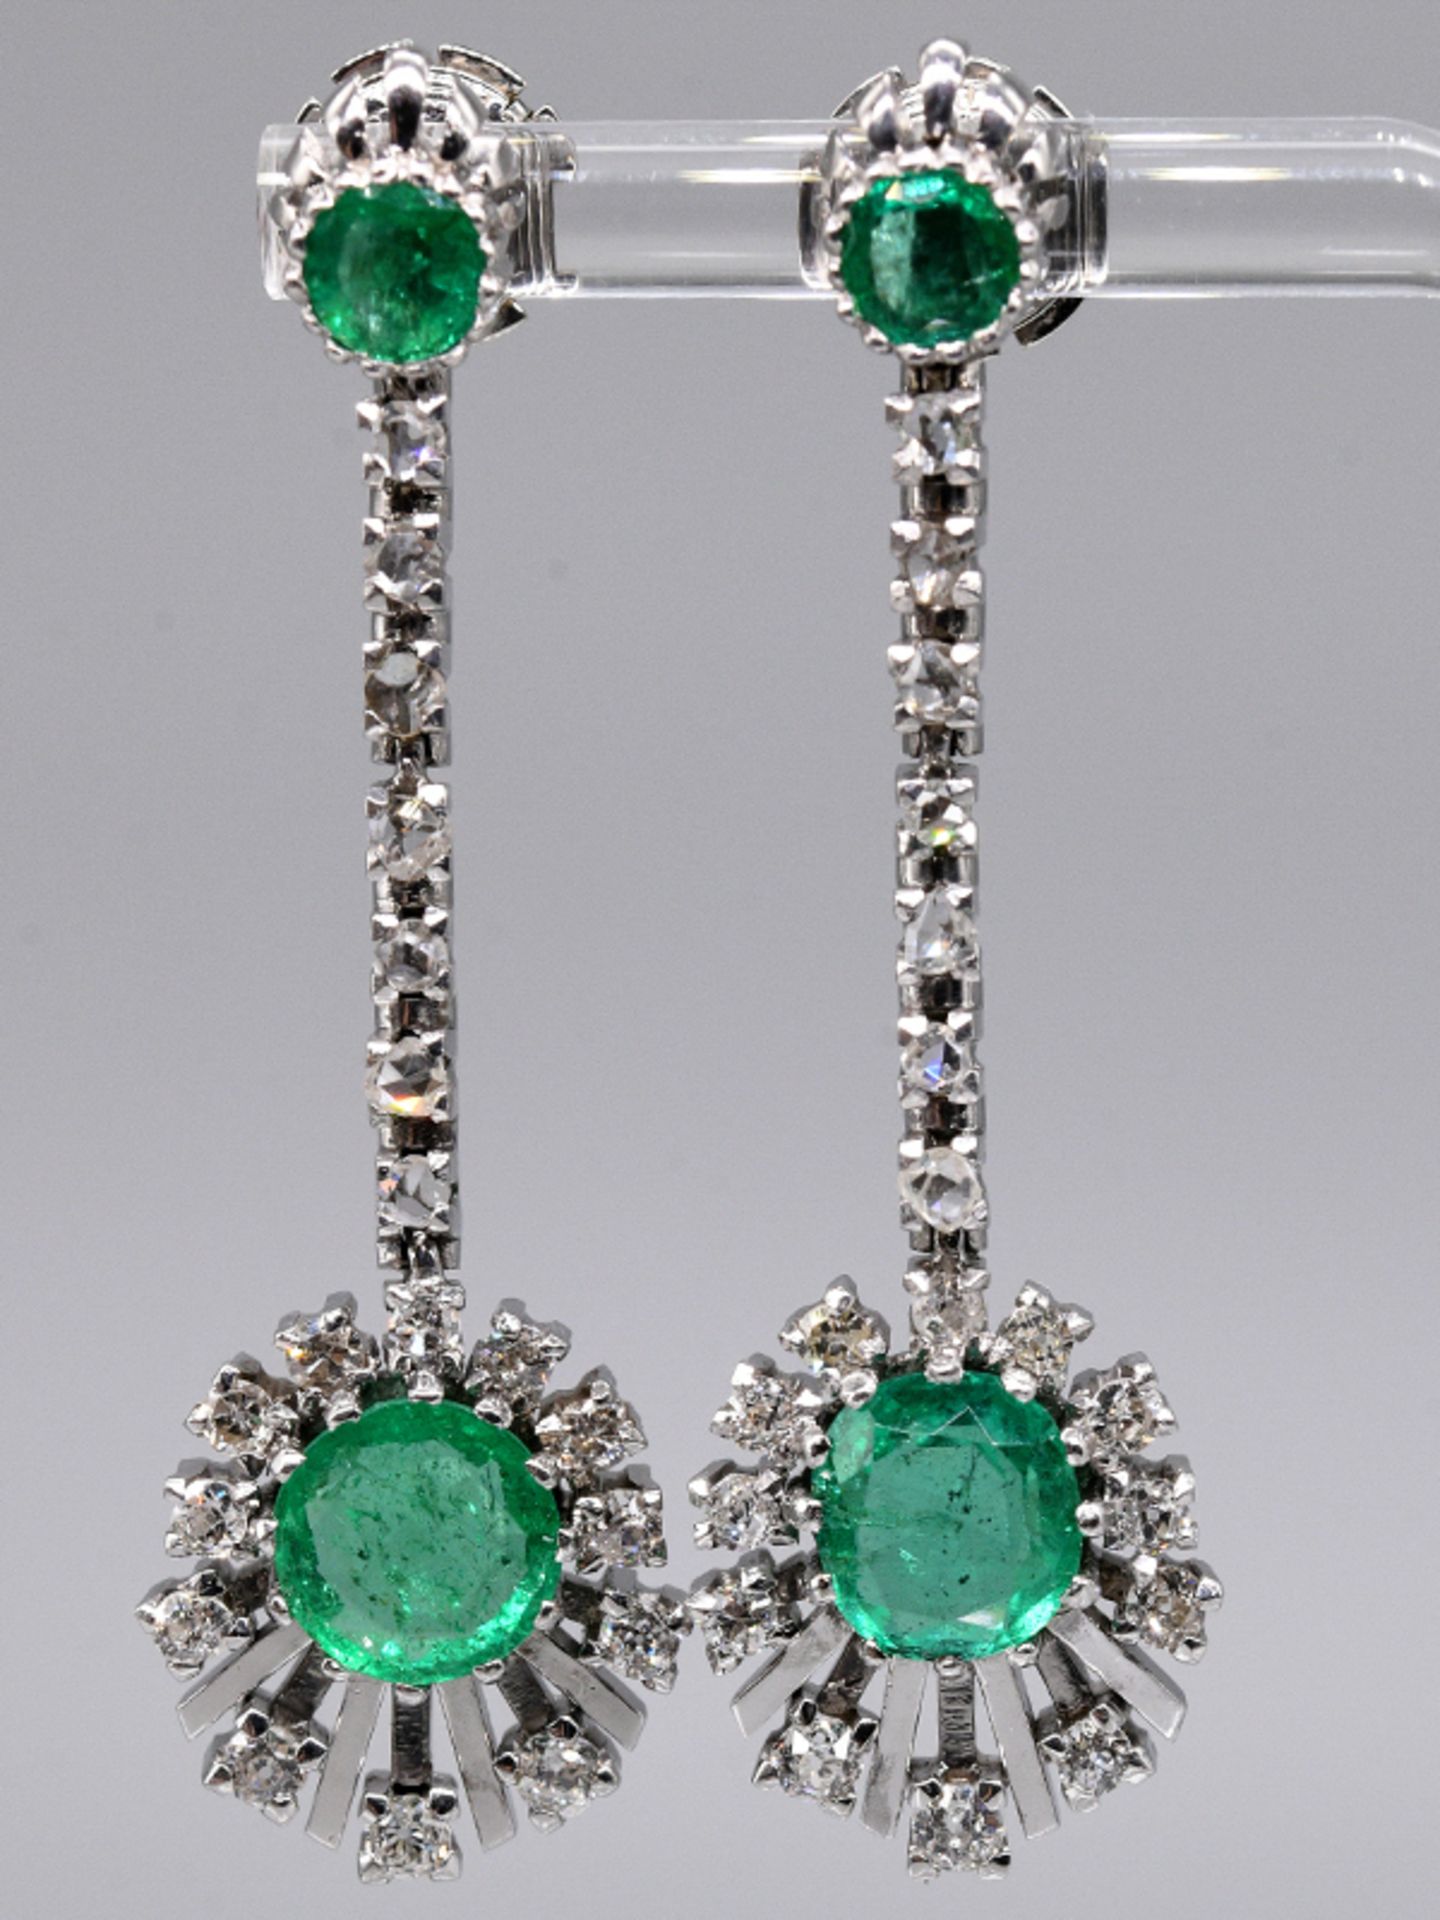 Paar Ohrgehänge mit 4 Smaragden, zus. ca. 2-2,5 ct und 36 Diamanten, zus. ca. 0,7 ct, 80- er Jahre